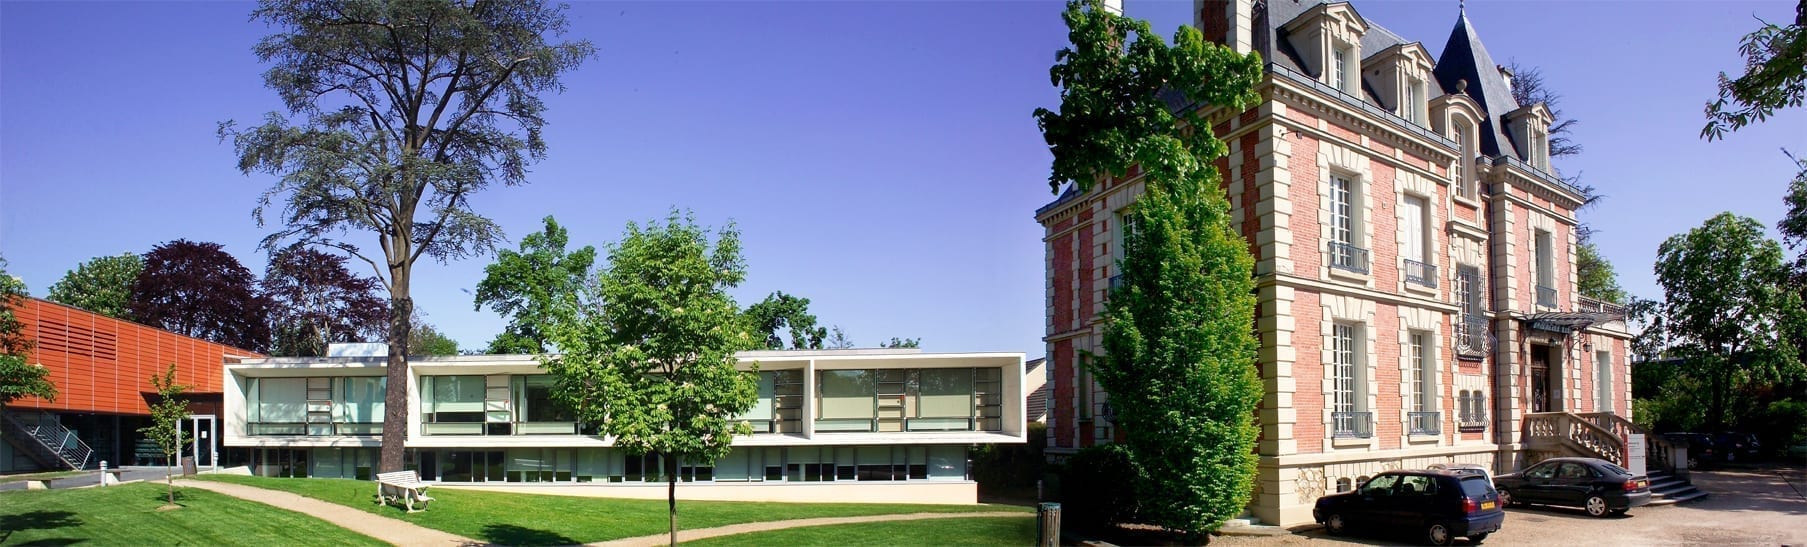 Campus ISPCA Osmothèque